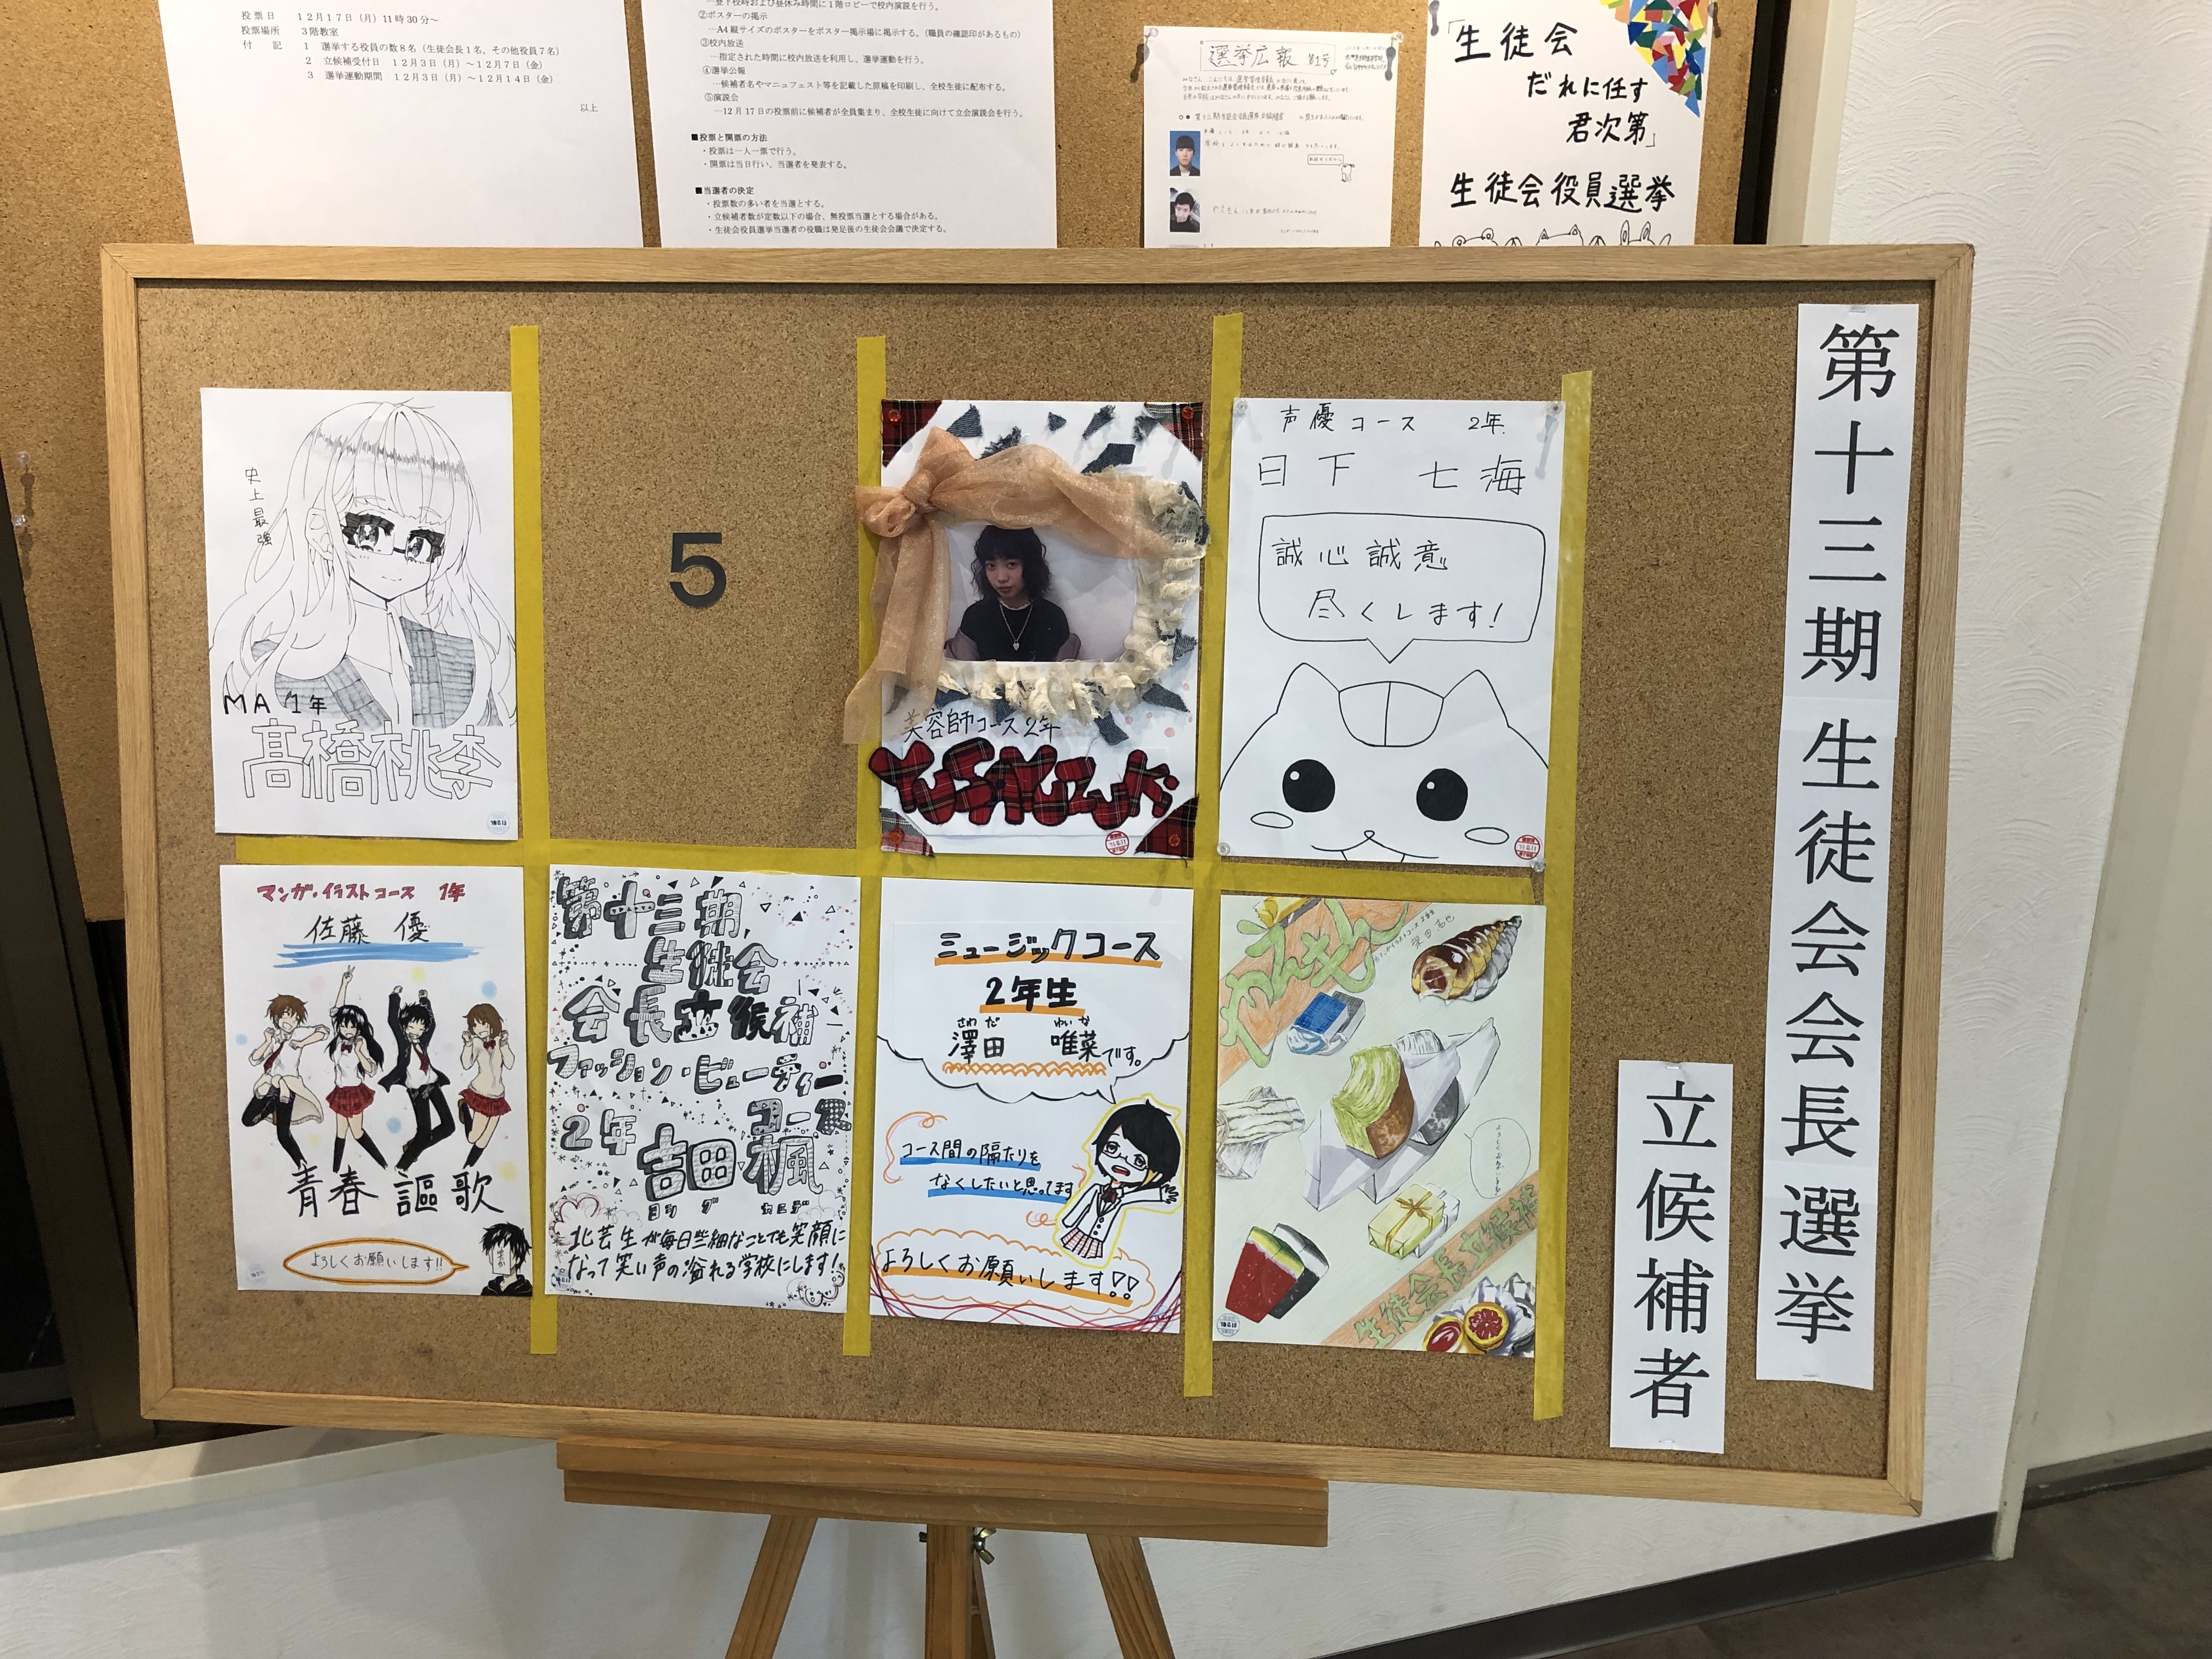 生徒会役員選挙 ブログ 仙台サテライトキャンパス 北海道芸術高等学校